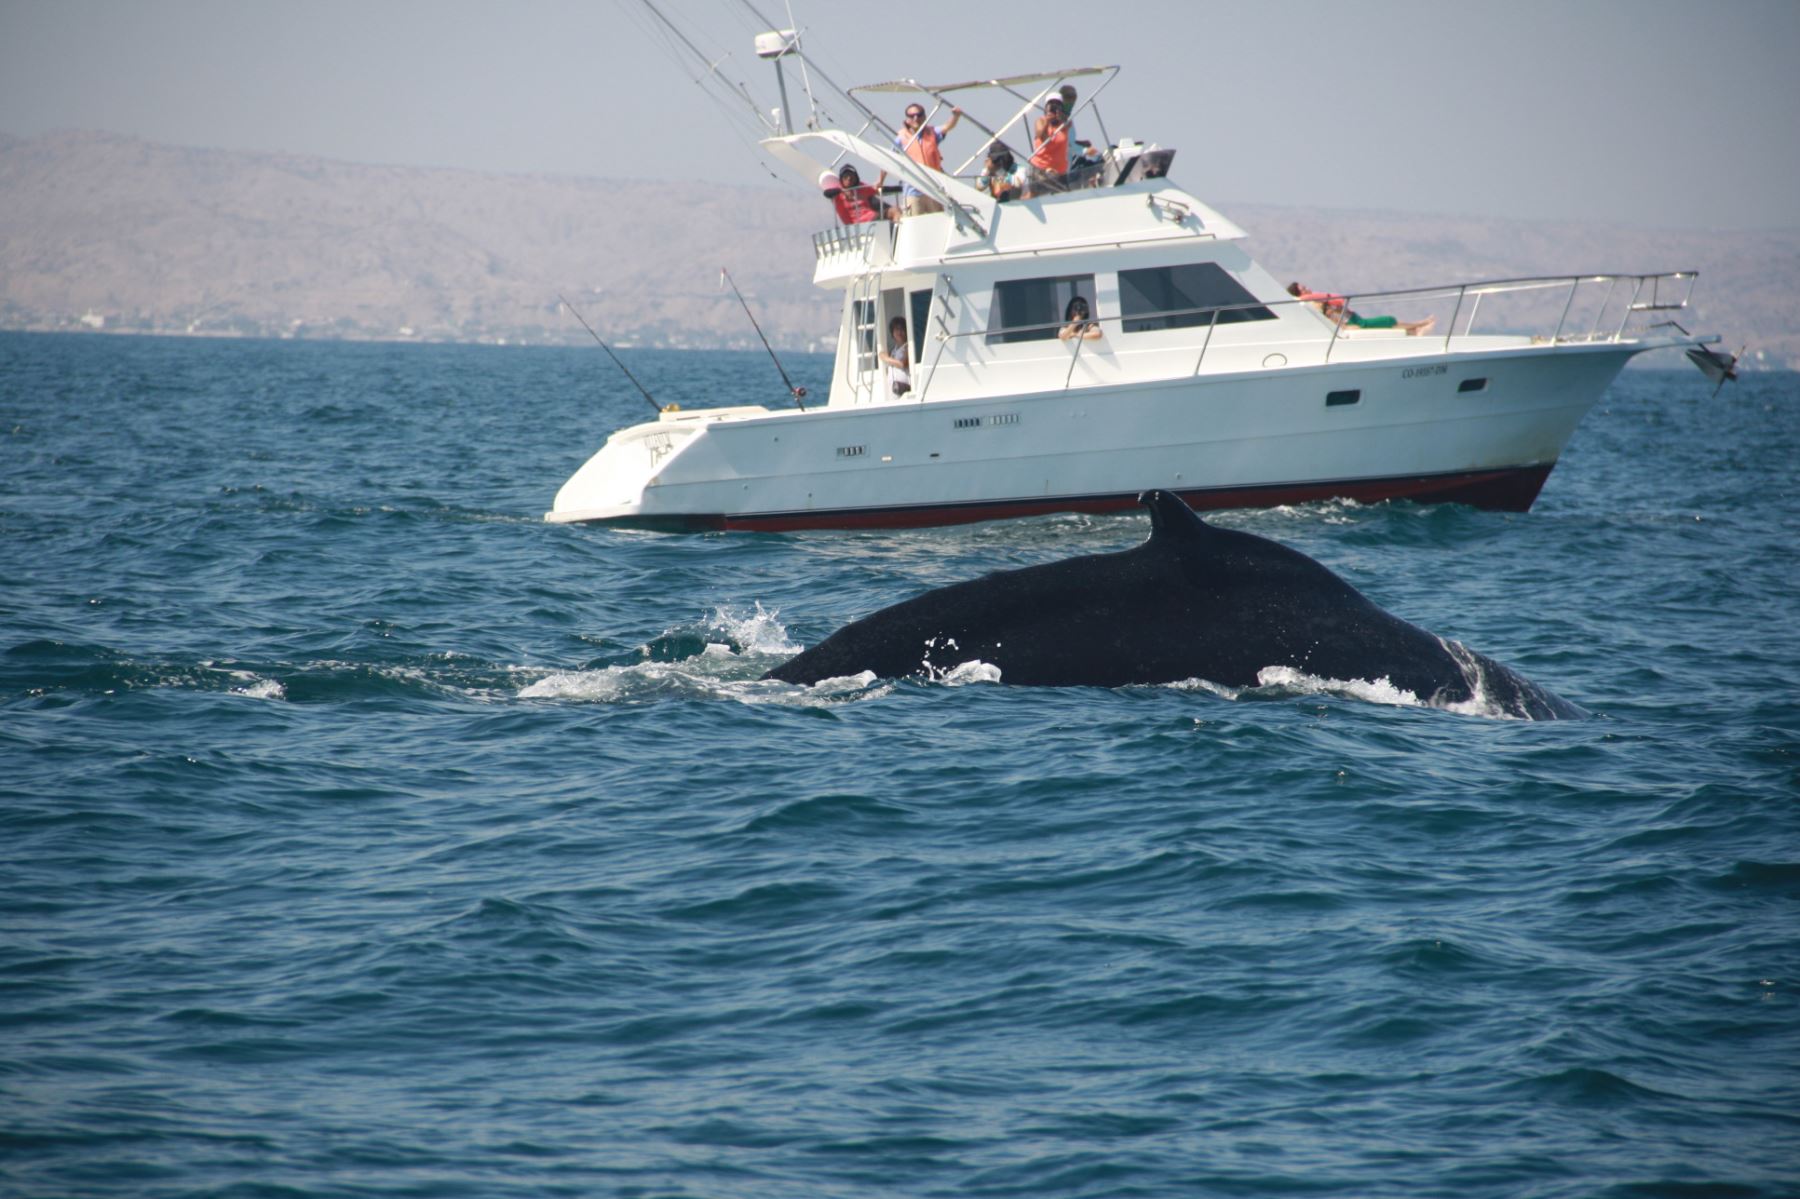 Tumbes busca posicionarse como el lugar ideal para el avistamiento de ballenas. 
Foto: Cortesía